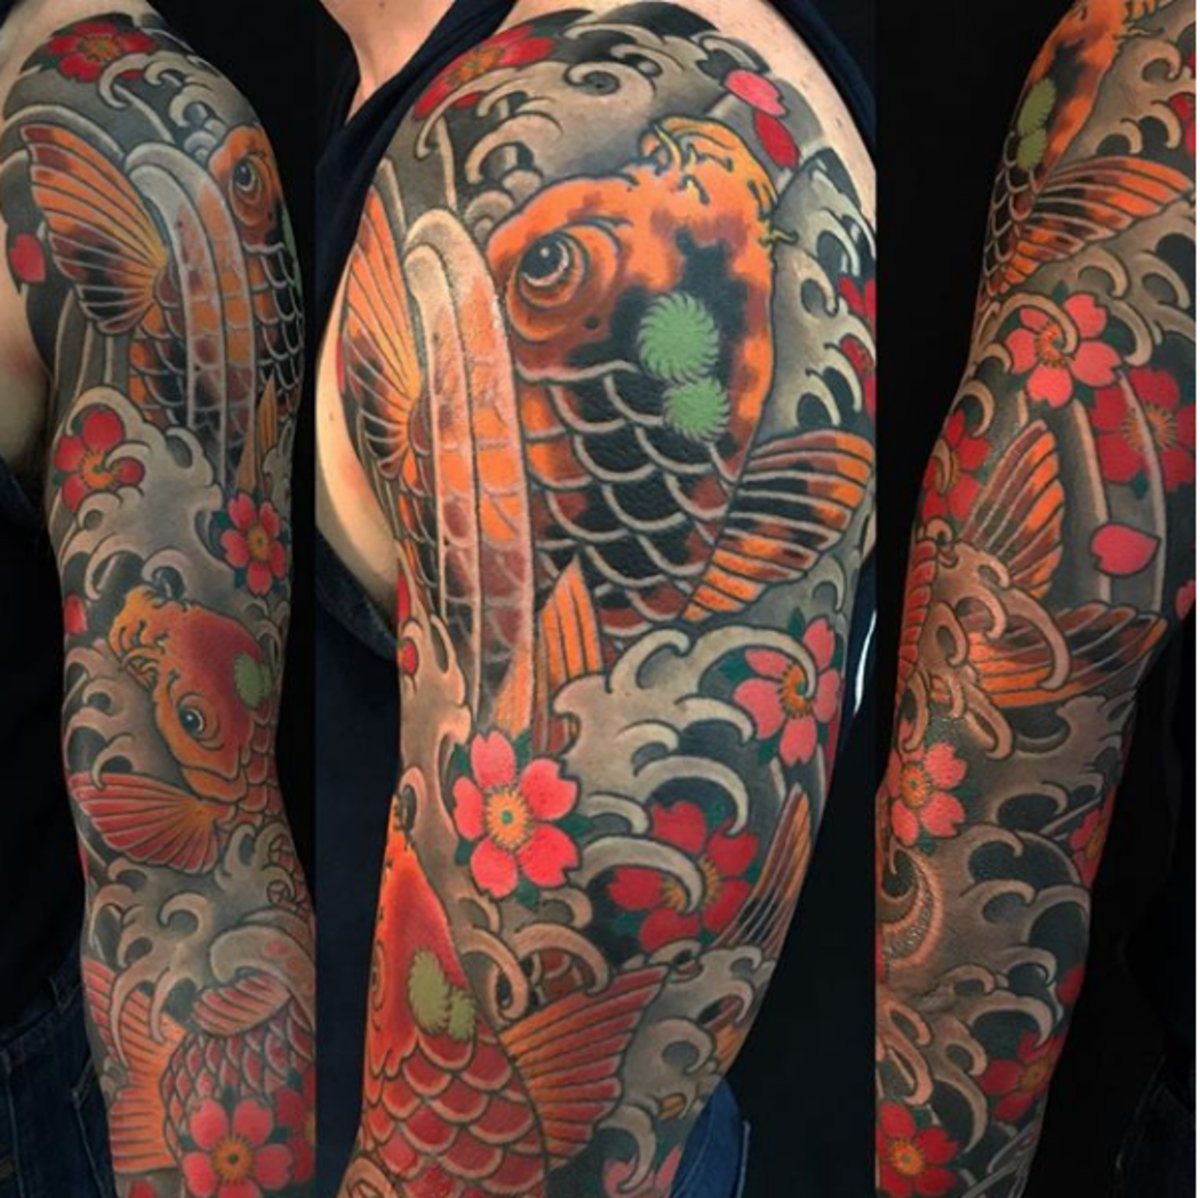 tatuointi, tatuoija, tatuointisuunnittelu, tatuointiinspiraatio, tatuointitaide, japanilainen tatuointi, muste, inkedmag